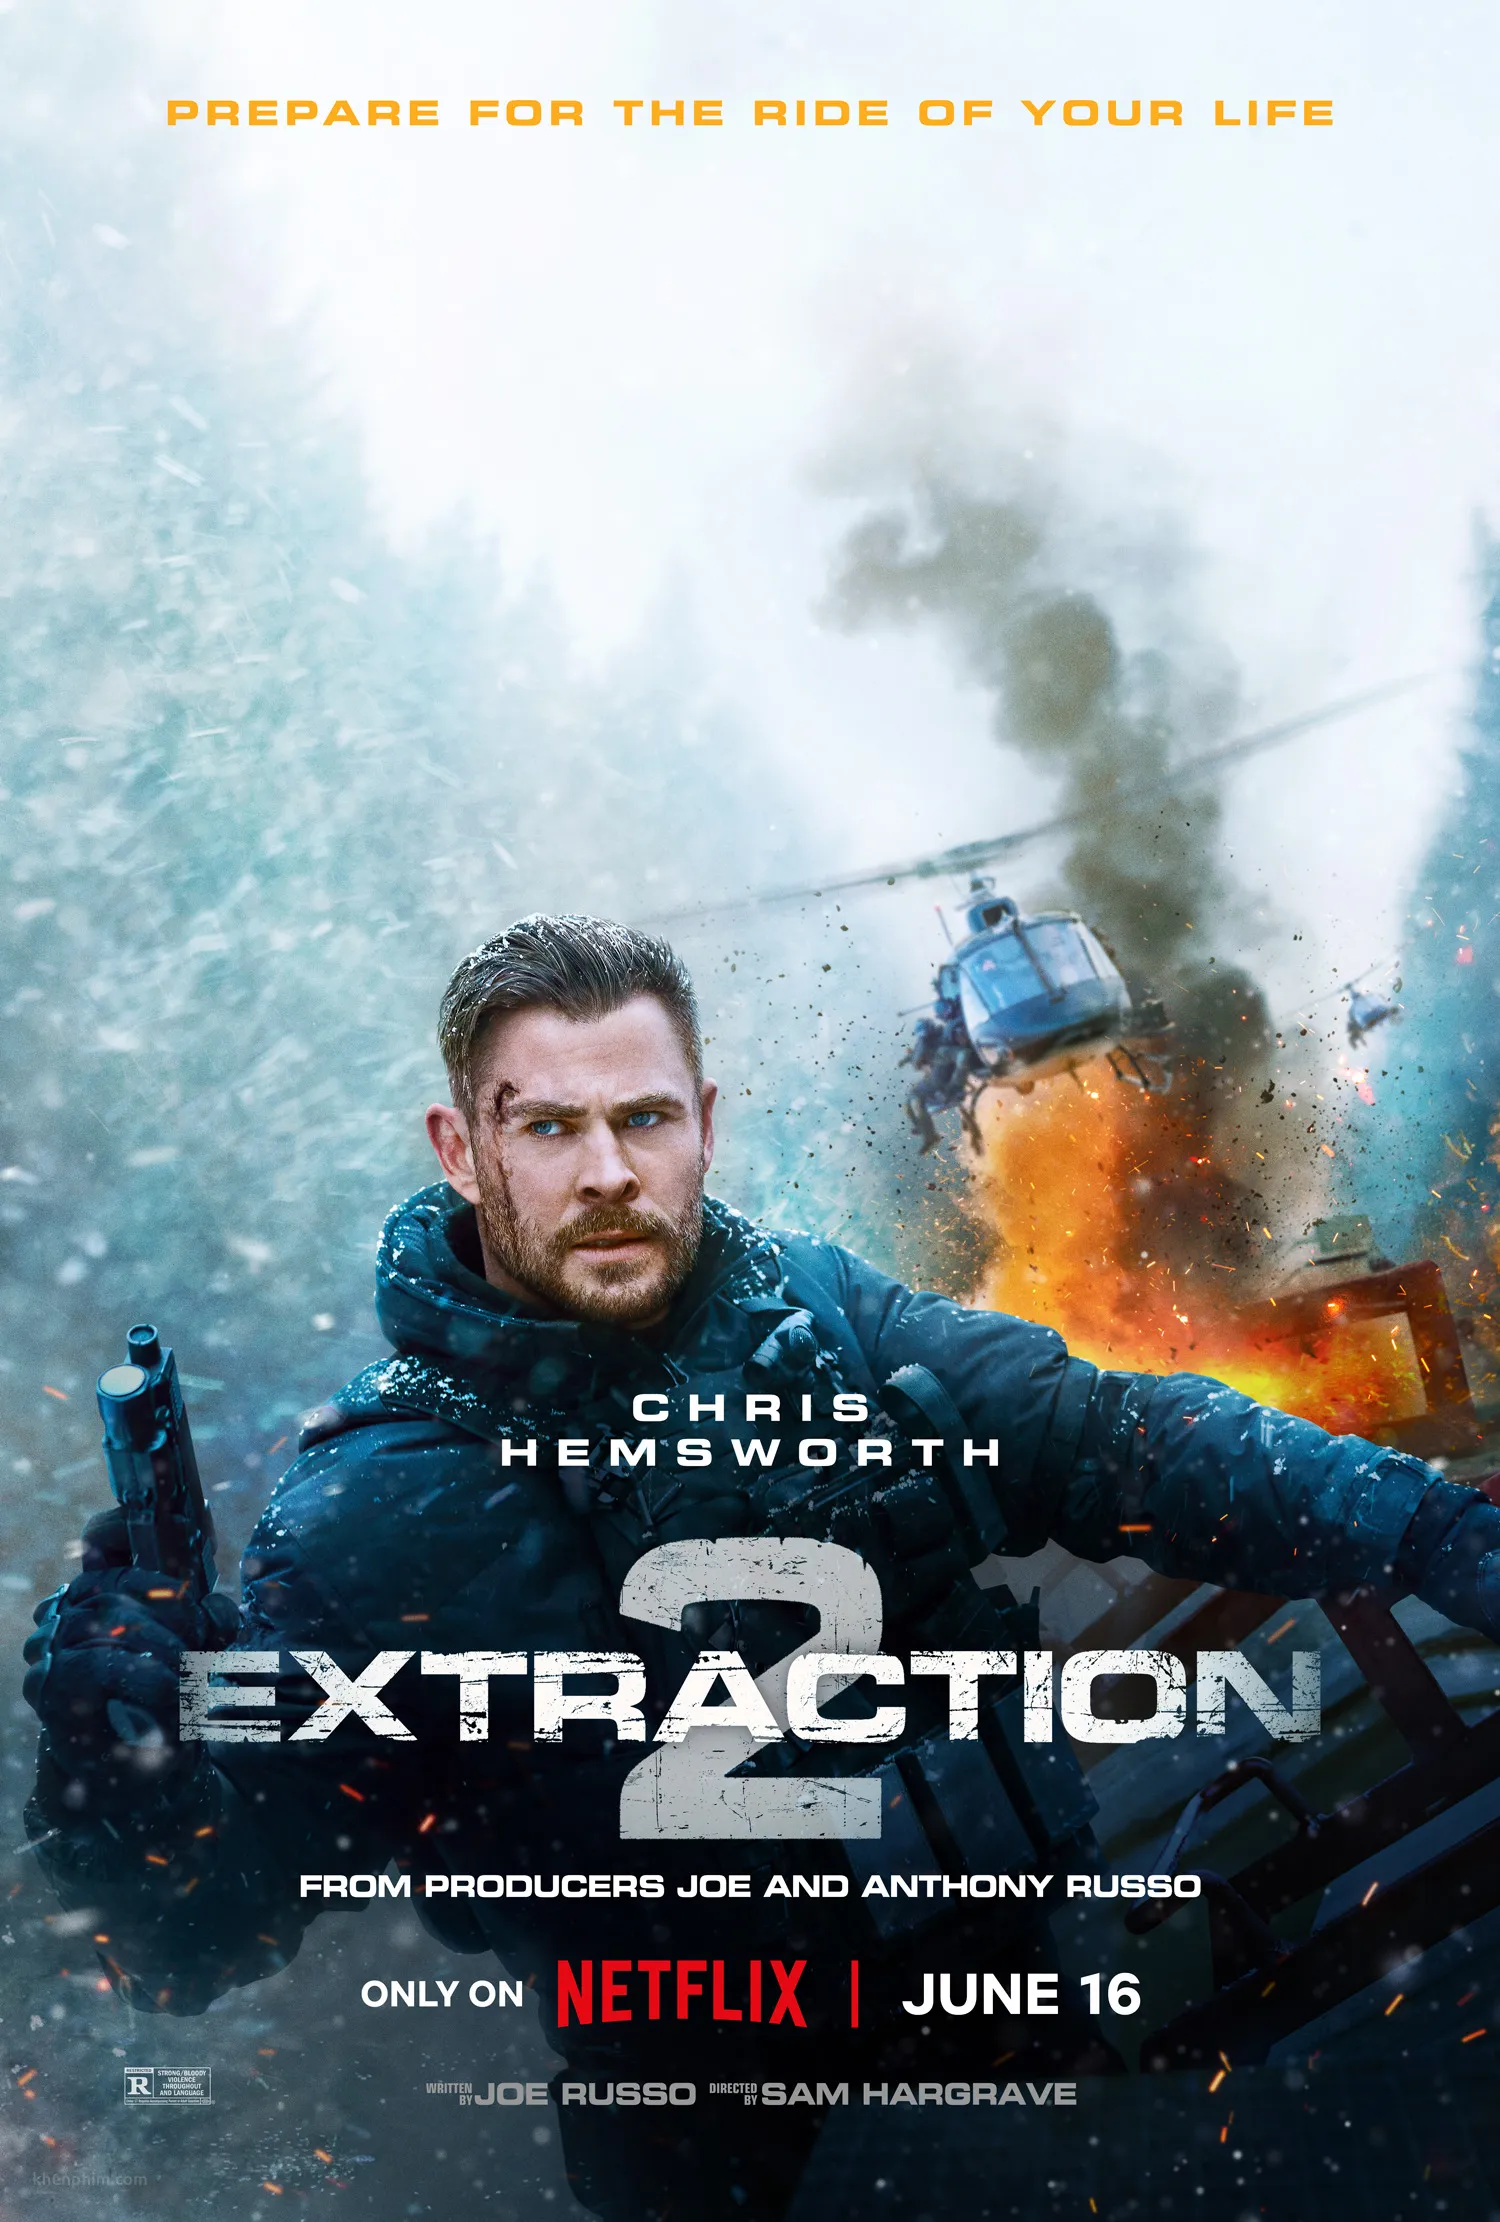 Review phim Extraction 2 – Hành động rất bạo, coi đã lắm